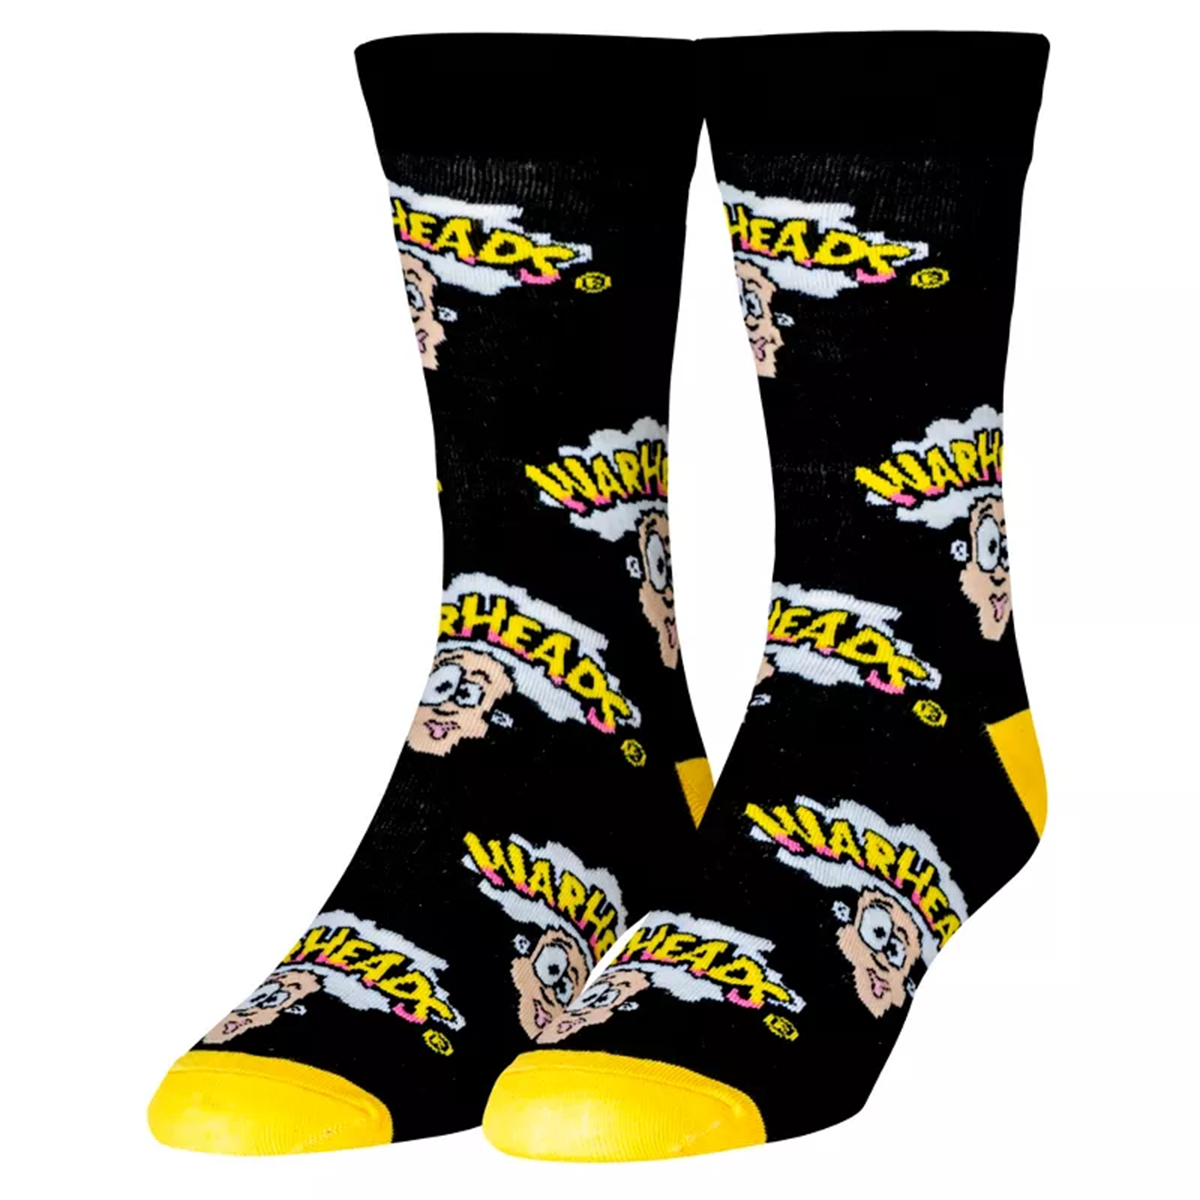 Warheads Crazy Socks by Odd Sox